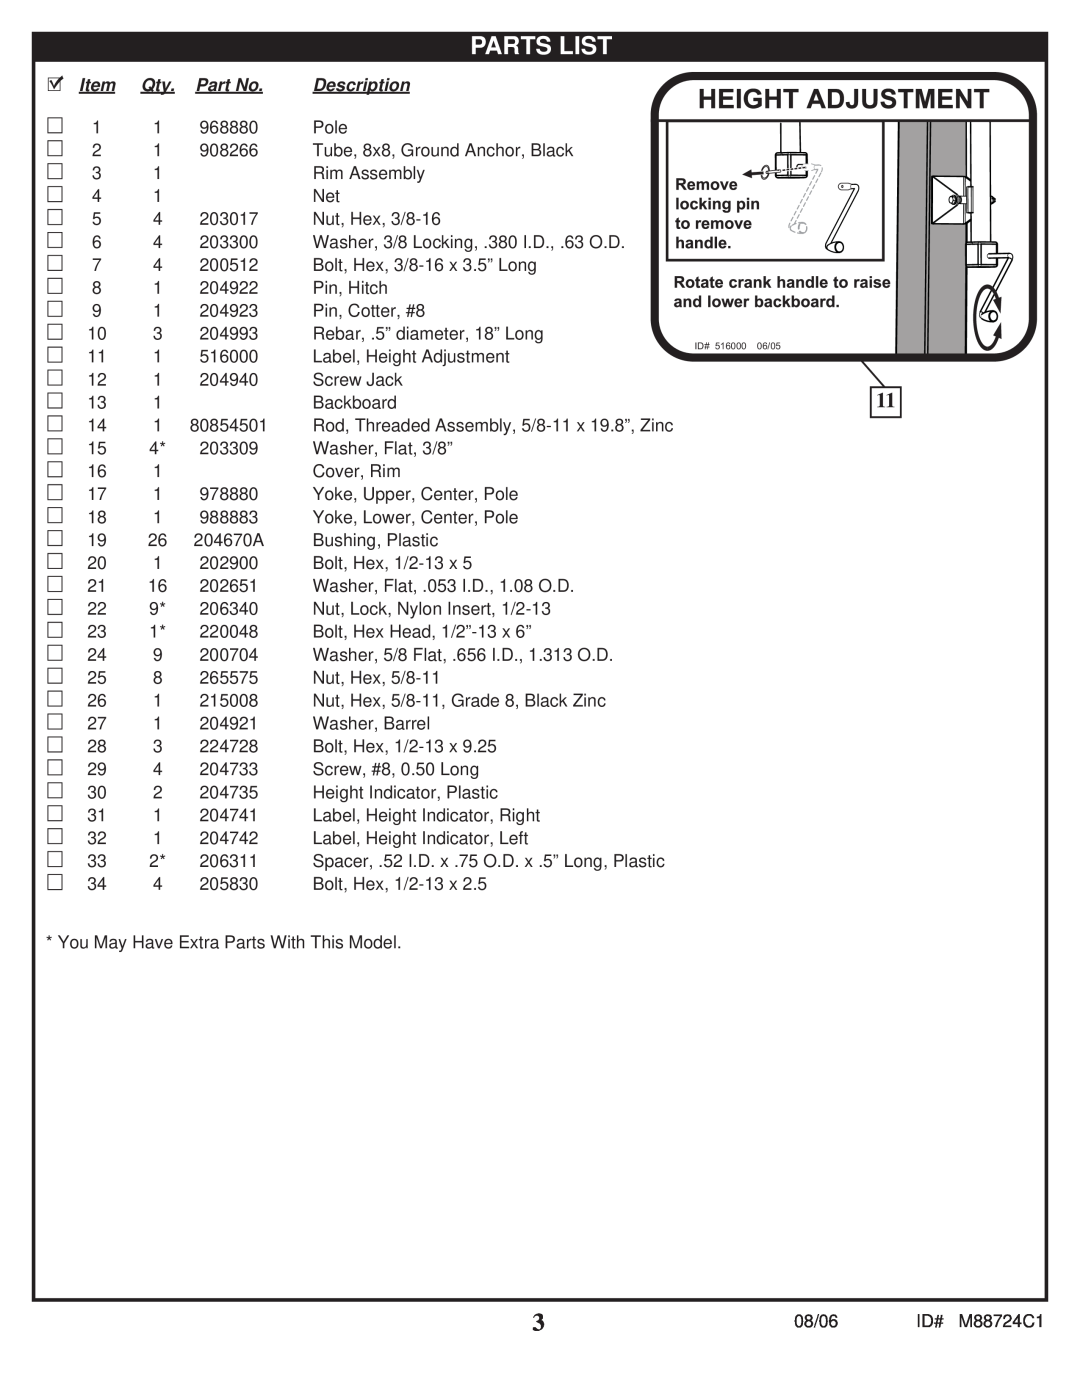 Spalding M88724C1 manual Parts List, Description 